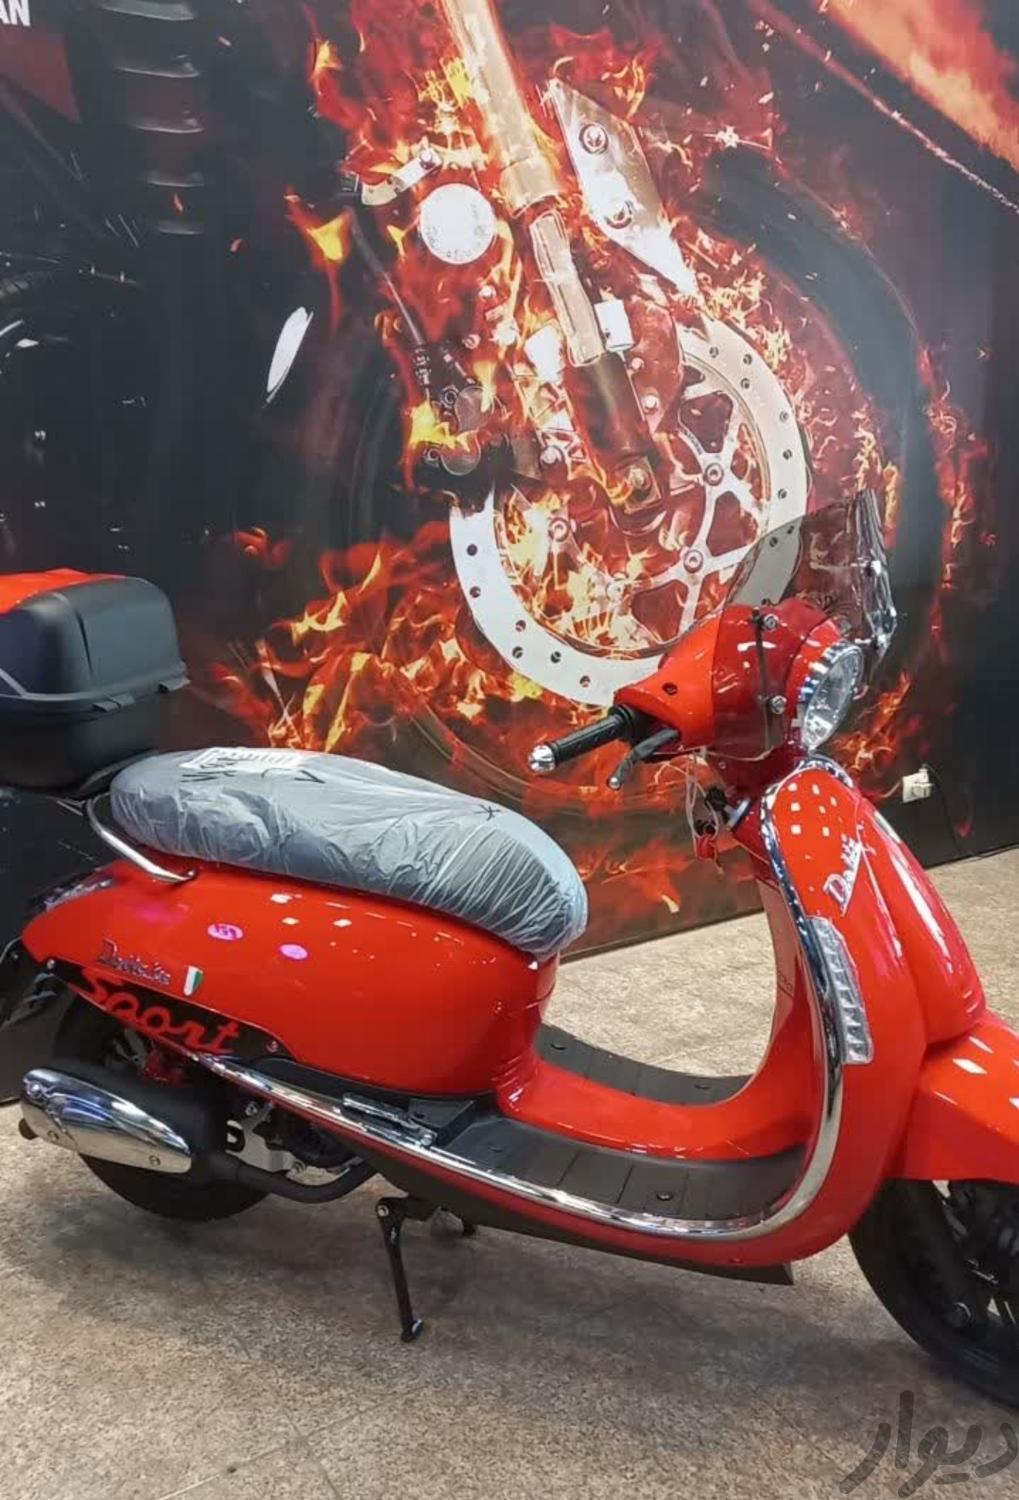 موتور سیکلت دلتا وسپا اسپرت با بیمهموتورسیکلتتهران، سناییدیوار 7064